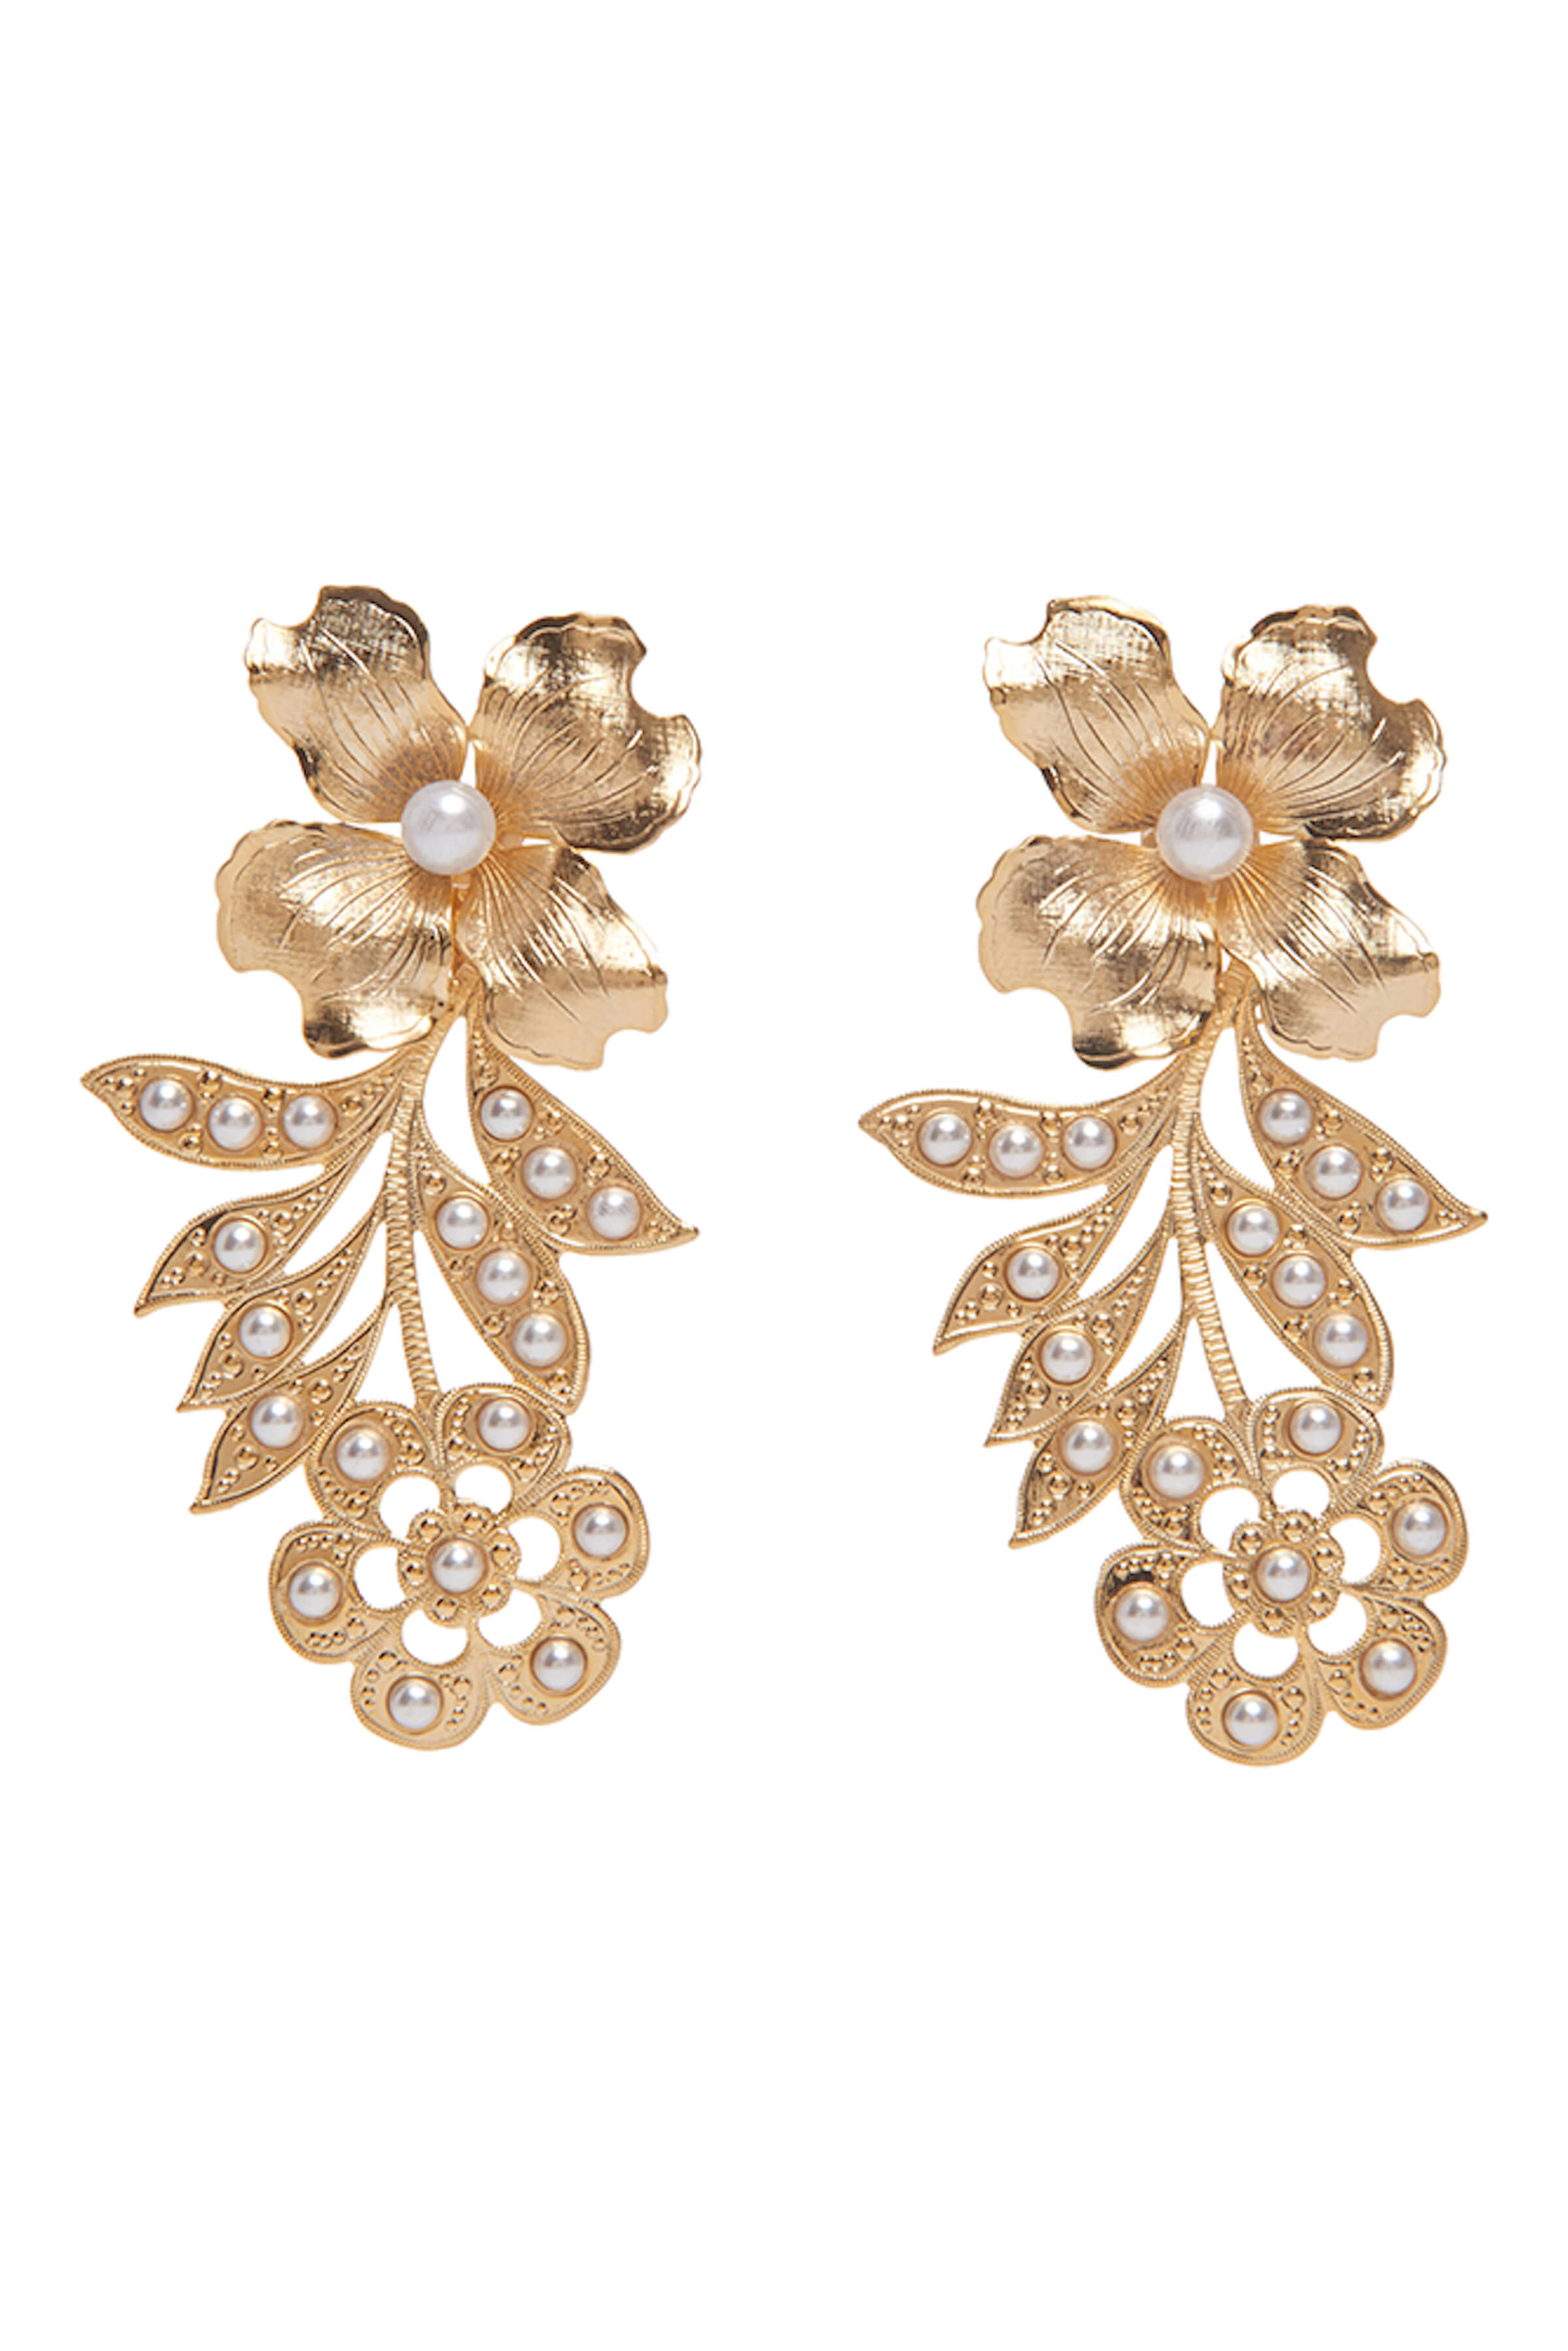 8 PETAL GREY FLOWER EARRINGS – Citrine Silver & Fashion Jewellery